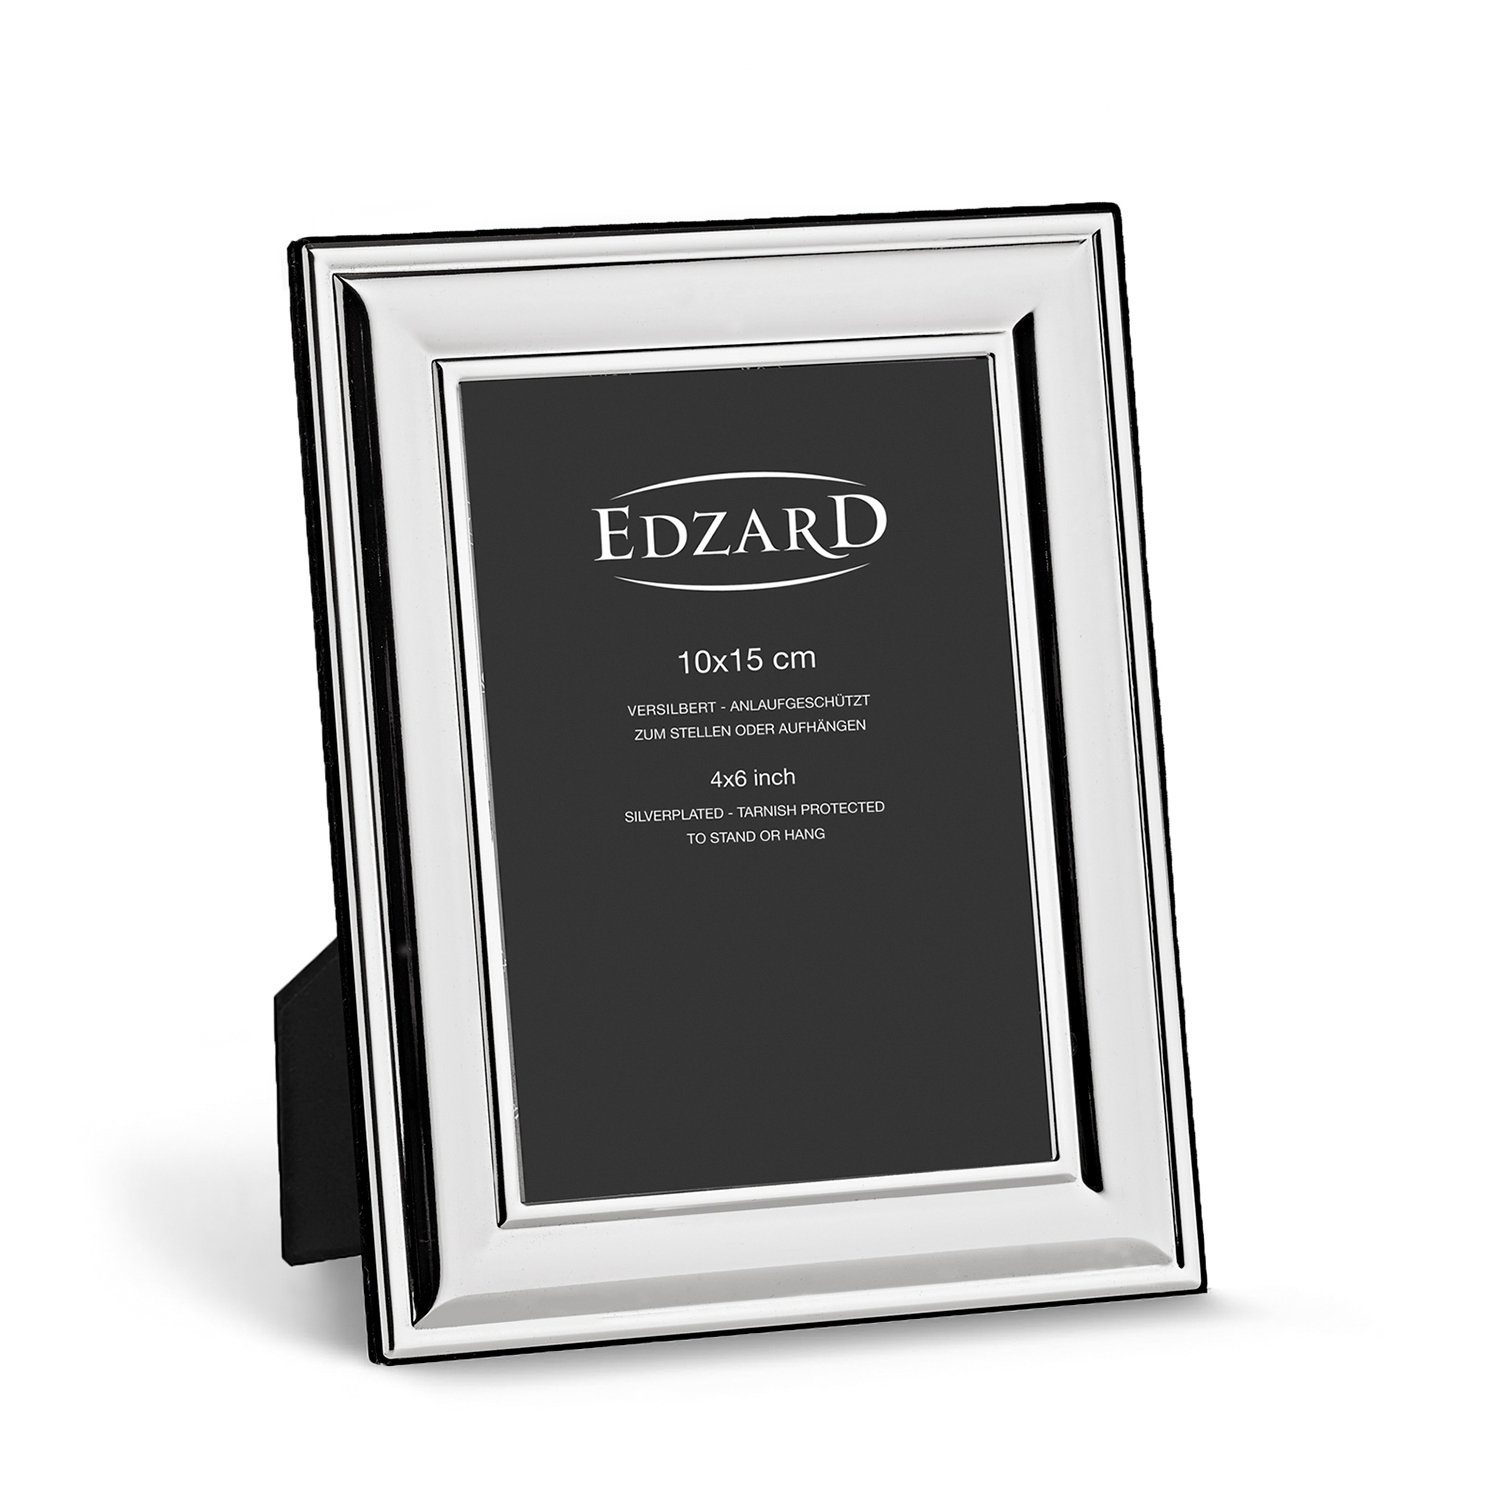 EDZARD Bilderrahmen Sunset, versilbert und anlaufgeschützt, für 10x15 cm  Foto - Fotorahmen, Rahmen für Foto zum Hinstellen und Aufhängen